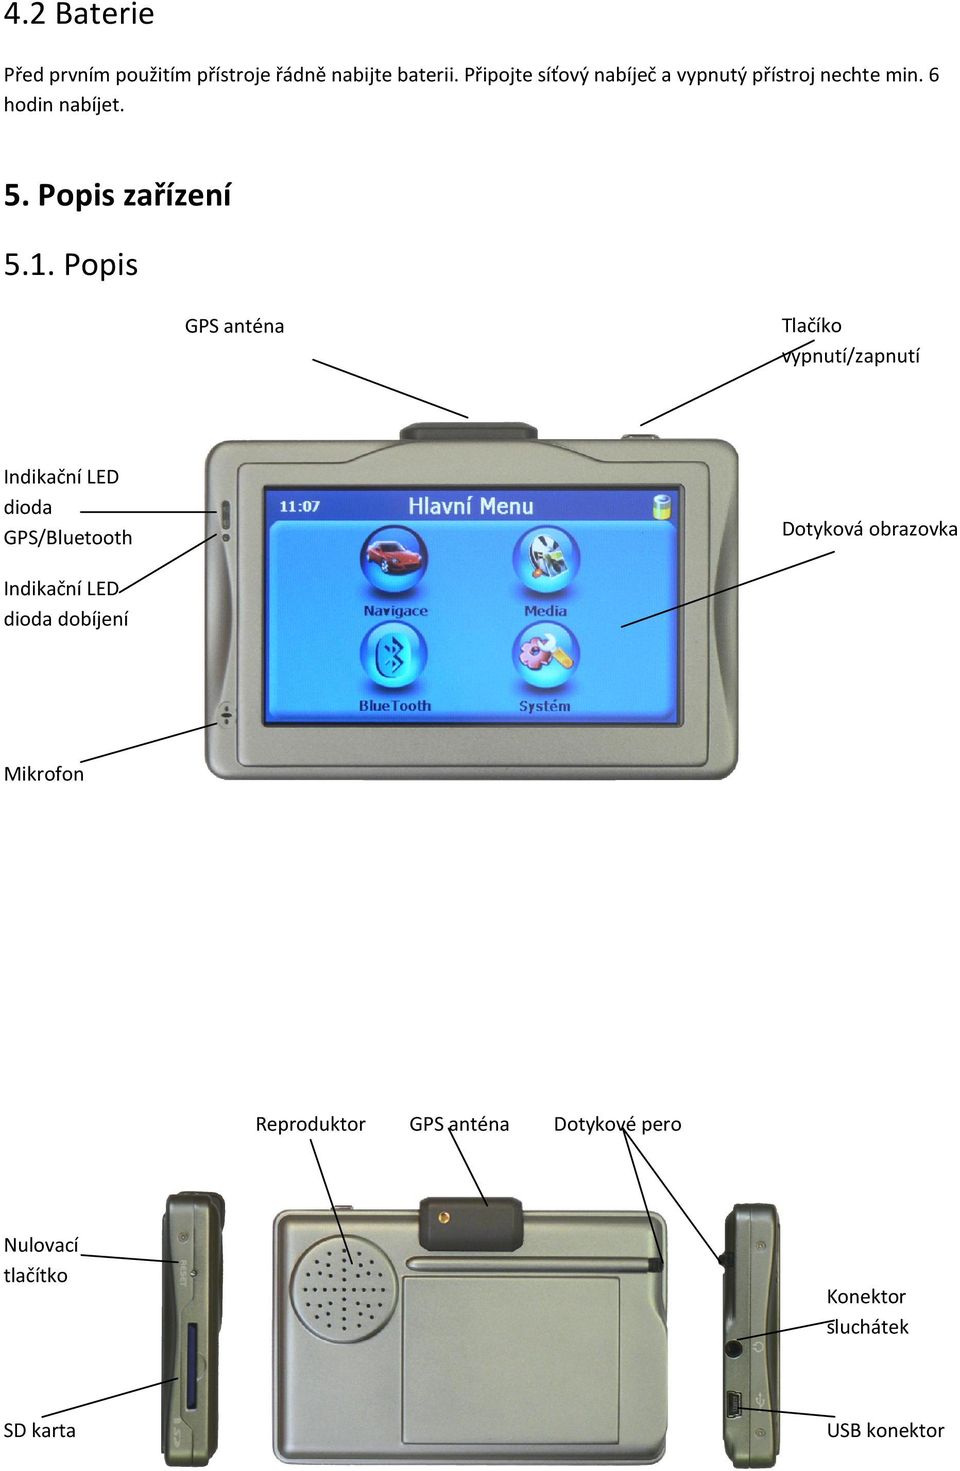 Popis GPS anténa Tlačíko vypnutí/zapnutí Indikační LED dioda GPS/Bluetooth Dotyková obrazovka